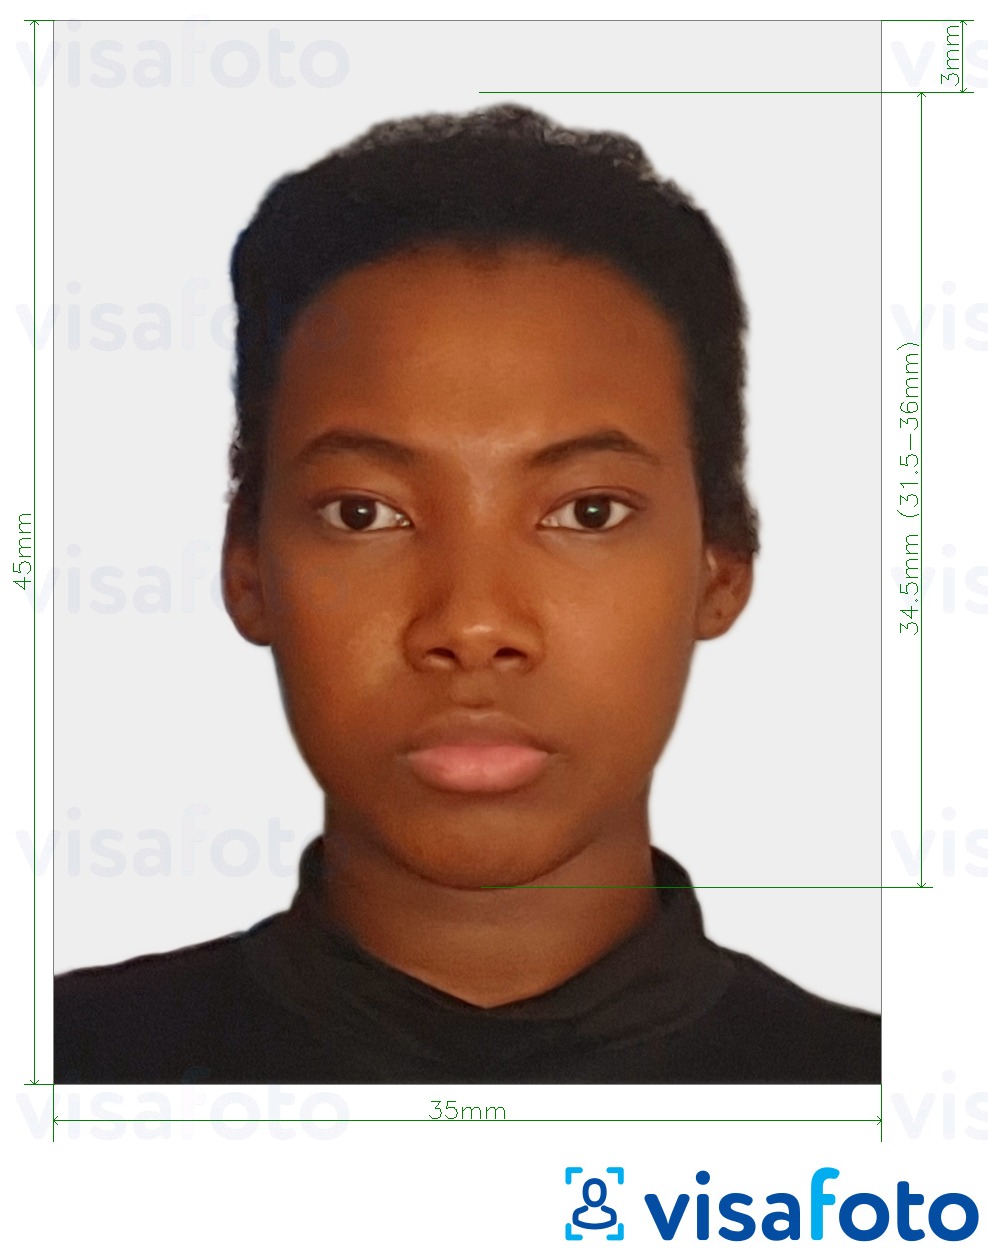 Voorbeeld van foto voor Togo visum 4,5x3,5 cm (45x35mm) met exacte maatspecificatie